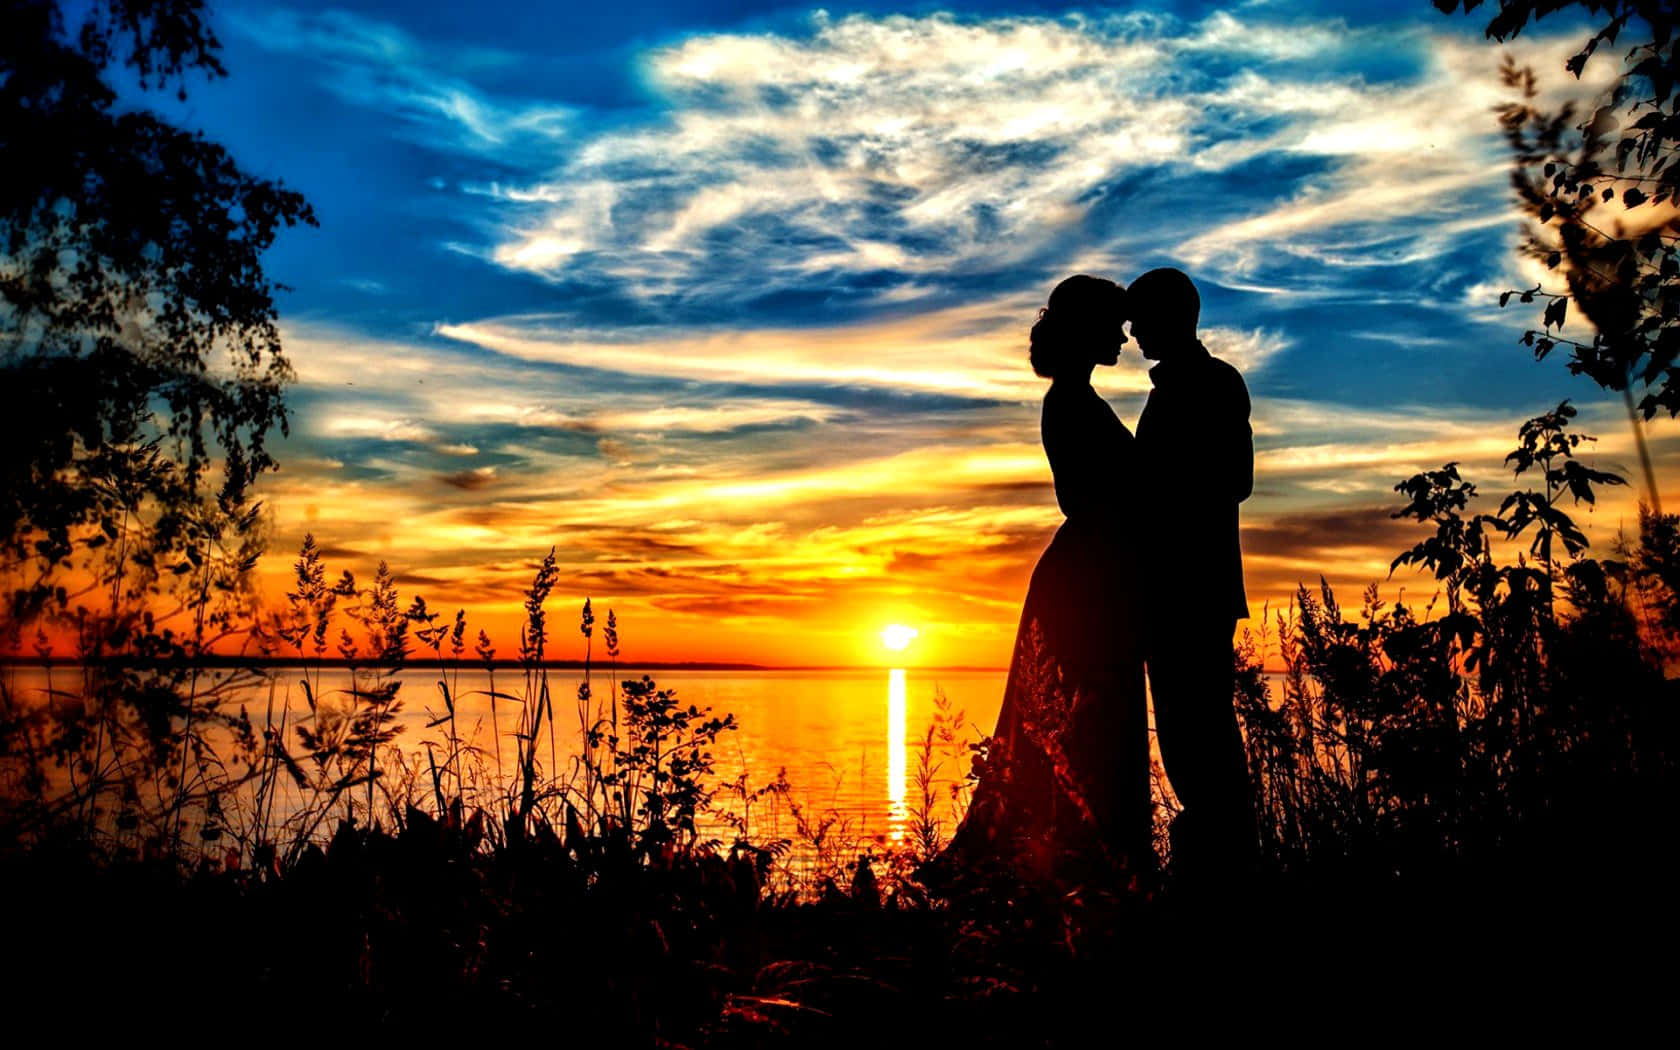 Paarsilhouette Mit Sonnenuntergangs-himmel Romantischem Hintergrund